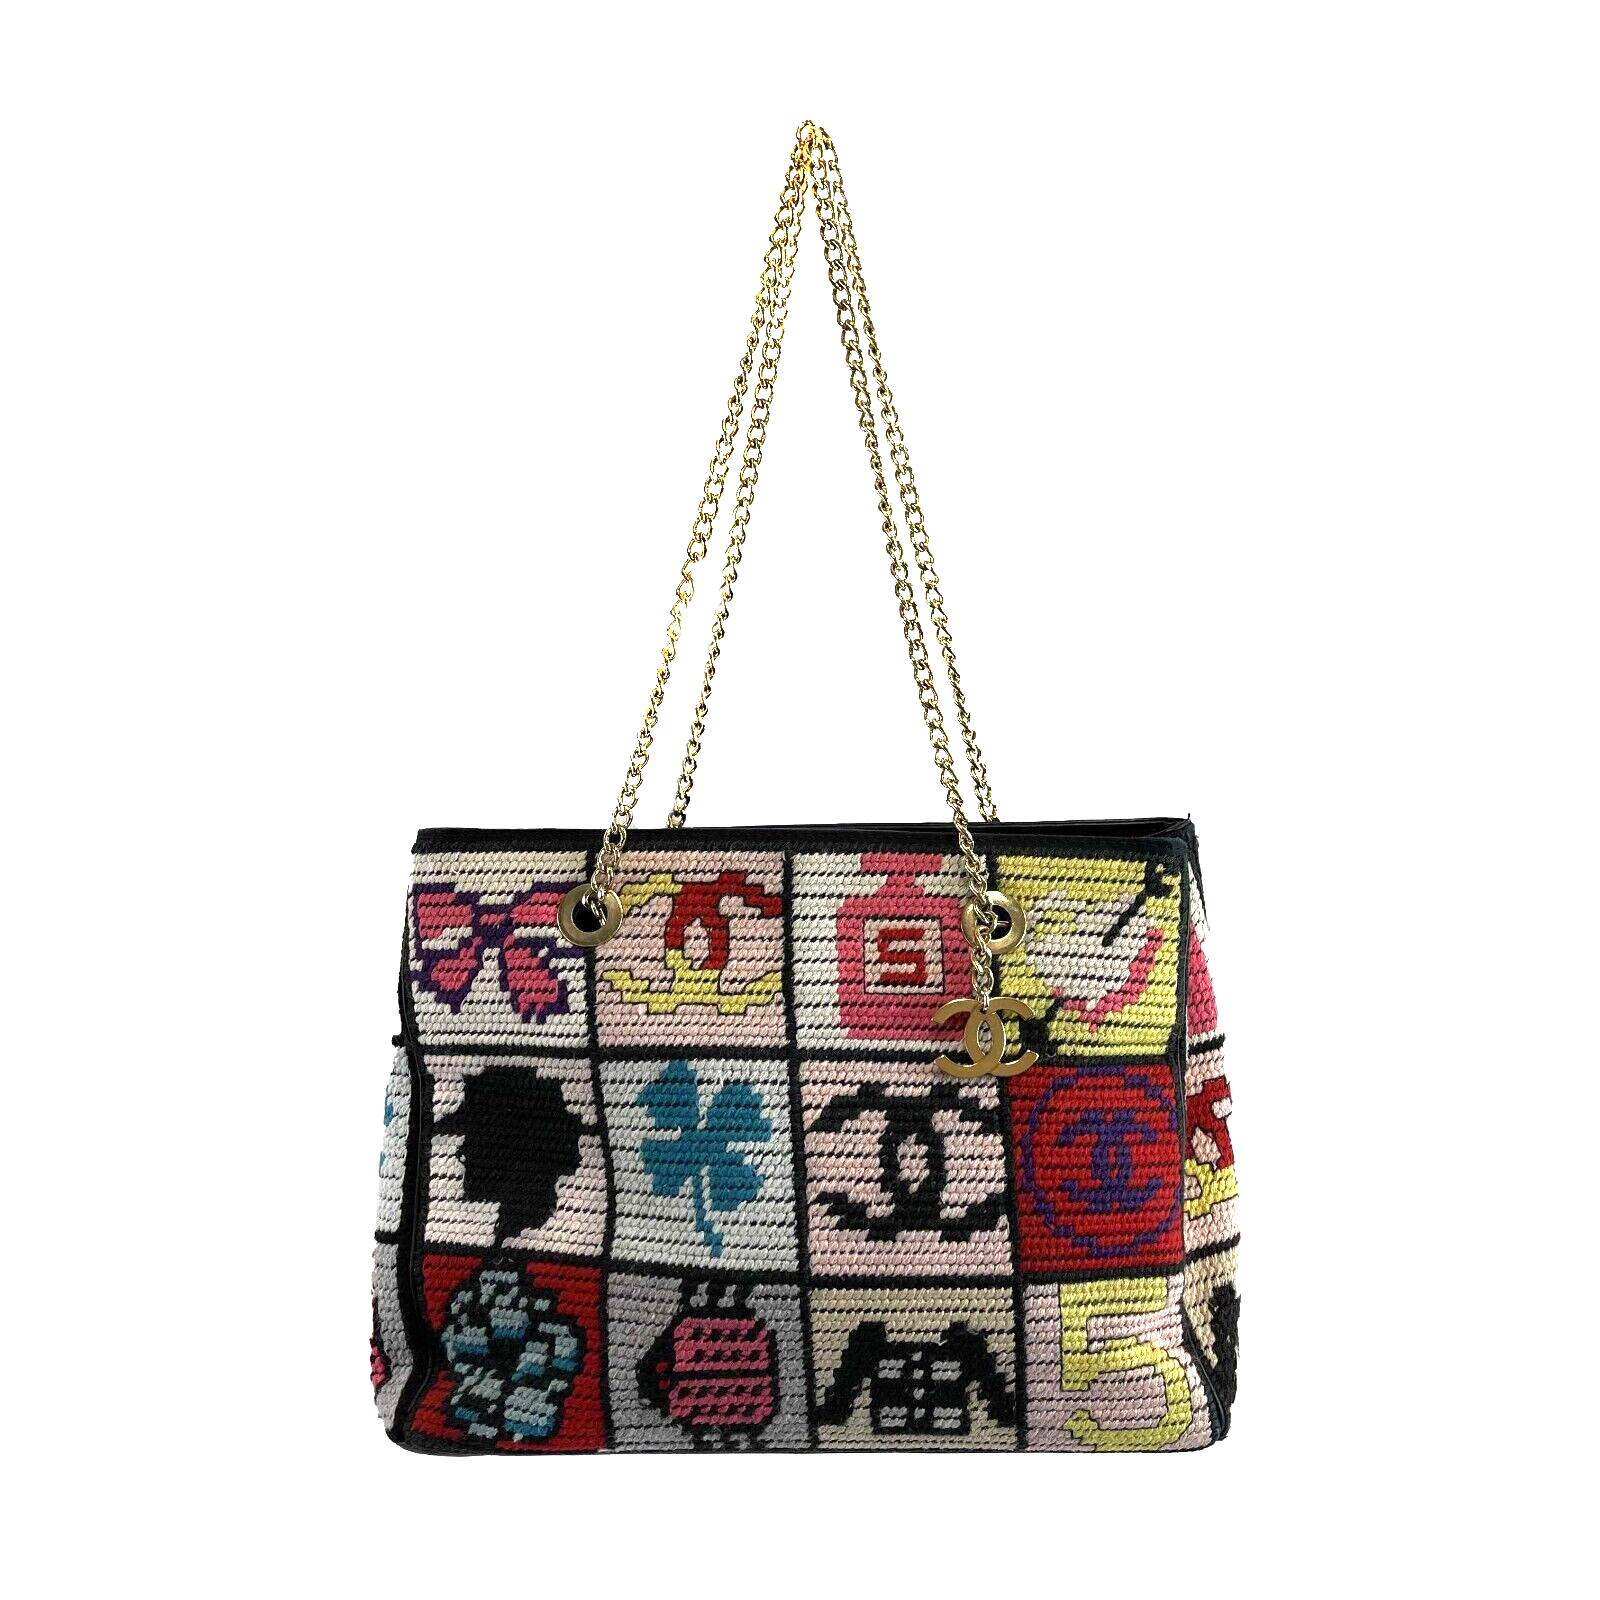 Chanel Multicolor Wool Precious Symbols Needle Point Bag Handbag 2003-2004 W/Box